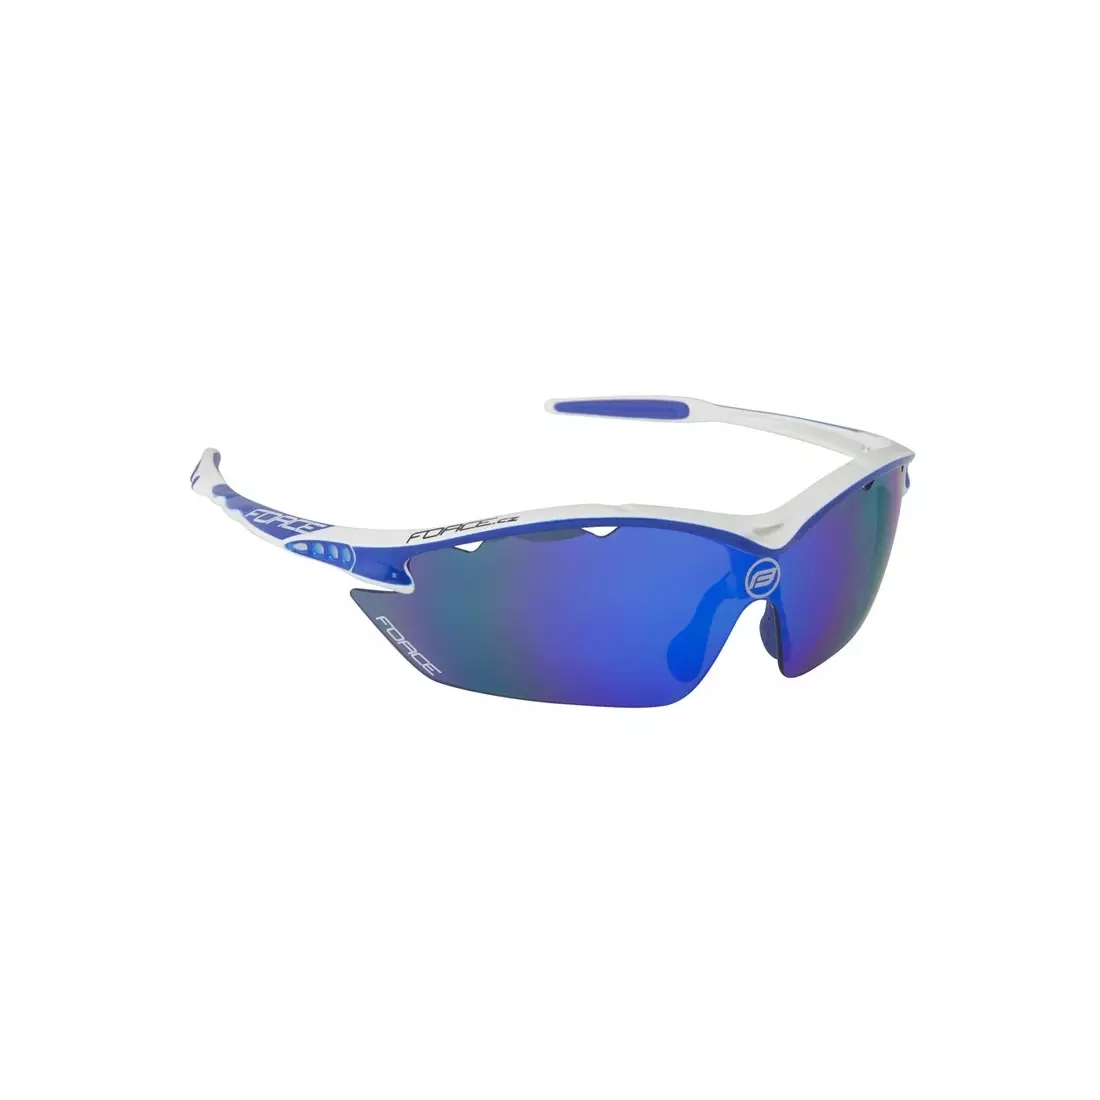 FORCE RON Sport-/Fahrradbrille weiß und blau 91010 austauschbare Gläser